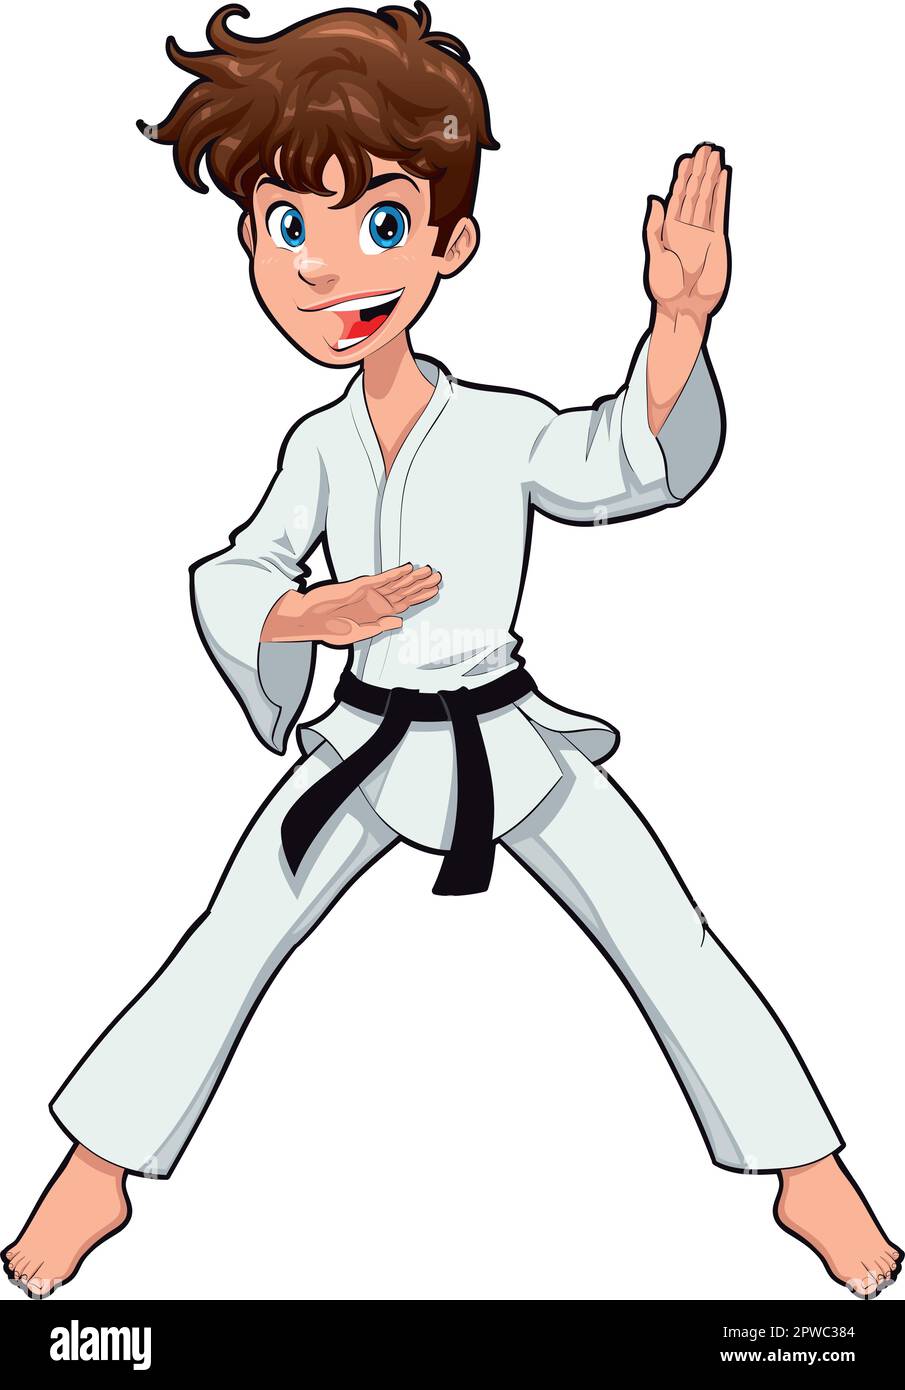 Ragazzo, Karate Player. Personaggio isolato del cartone animato vettoriale Illustrazione Vettoriale